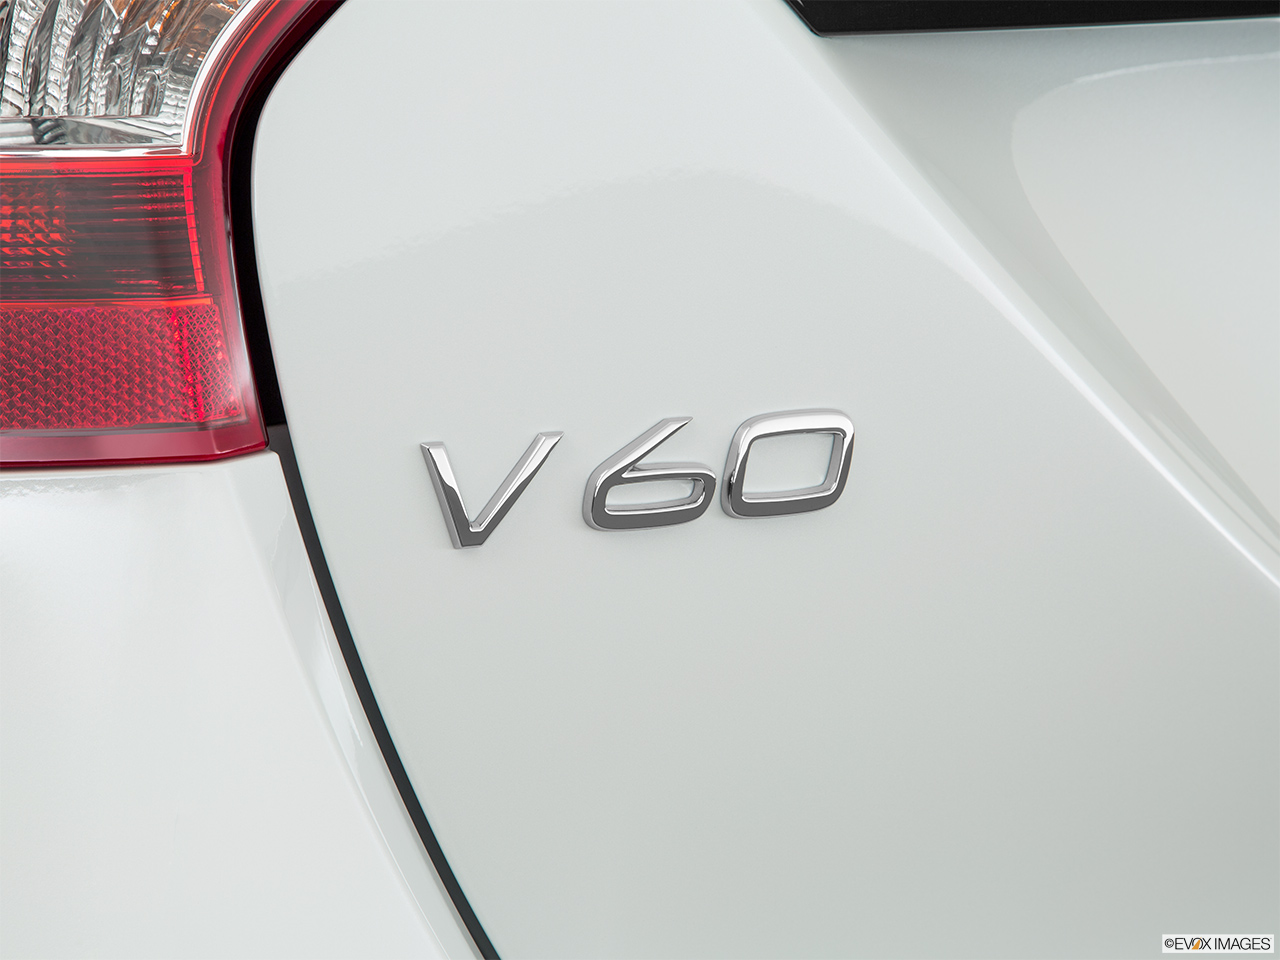 2017 Volvo V60 T5 Premier Rear model badge/emblem 